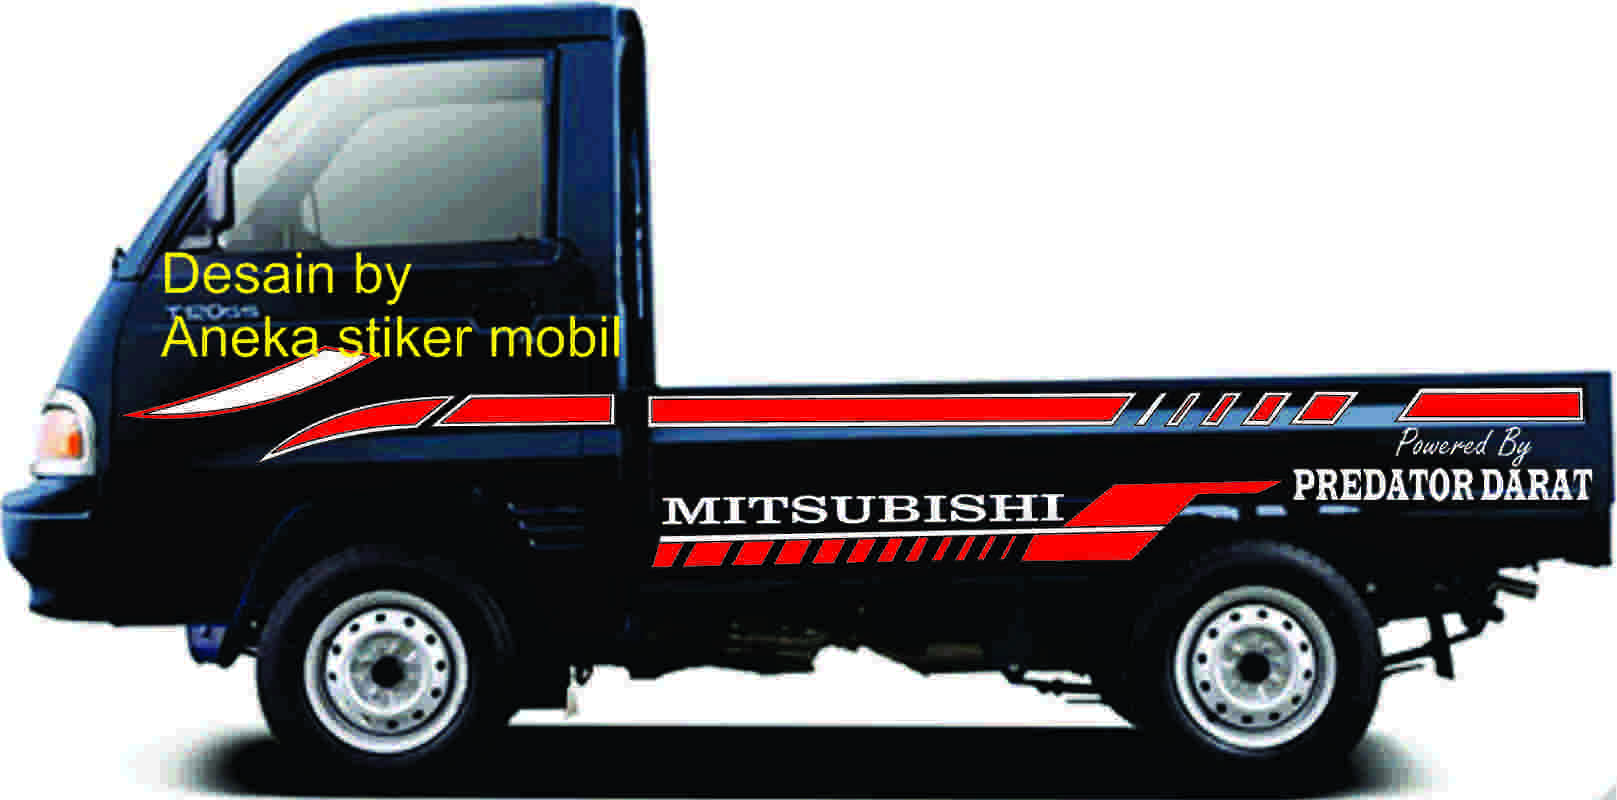 Jual Stiker Mobil T120ss L300 Futura Promo Stiker Mobil Mitsubishi T120ss L300 Futura Terbaru Online April 2021 Blibli